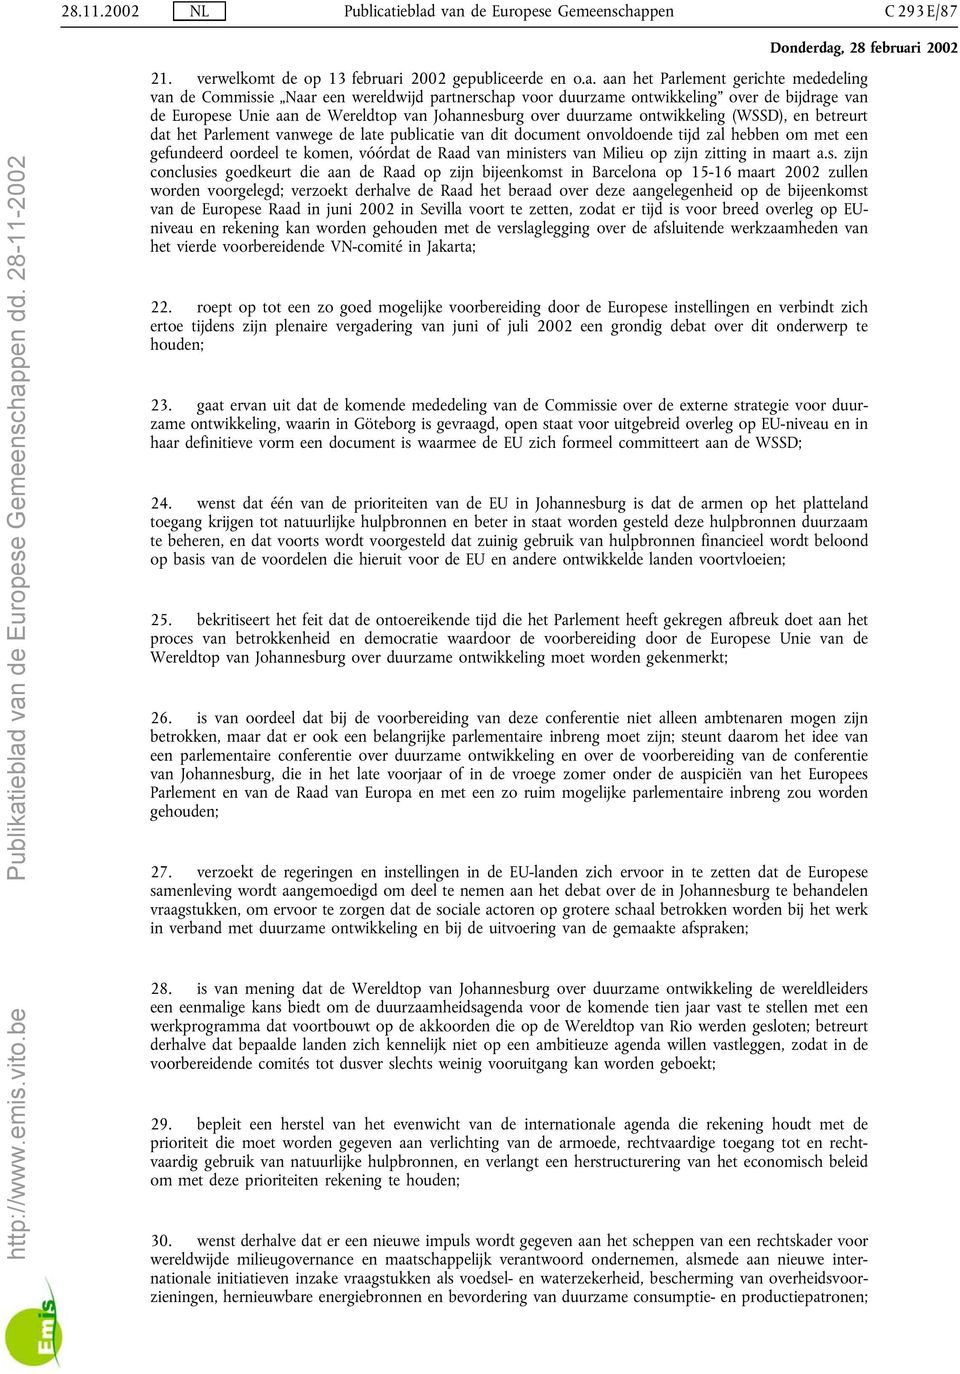 van de Europese Gemeenschappen C 293 E/87 21. verwelkomt de op 13 februari 2002 gepubliceerde en o.a. aan het Parlement gerichte mededeling van de Commissie Naar een wereldwijd partnerschap voor